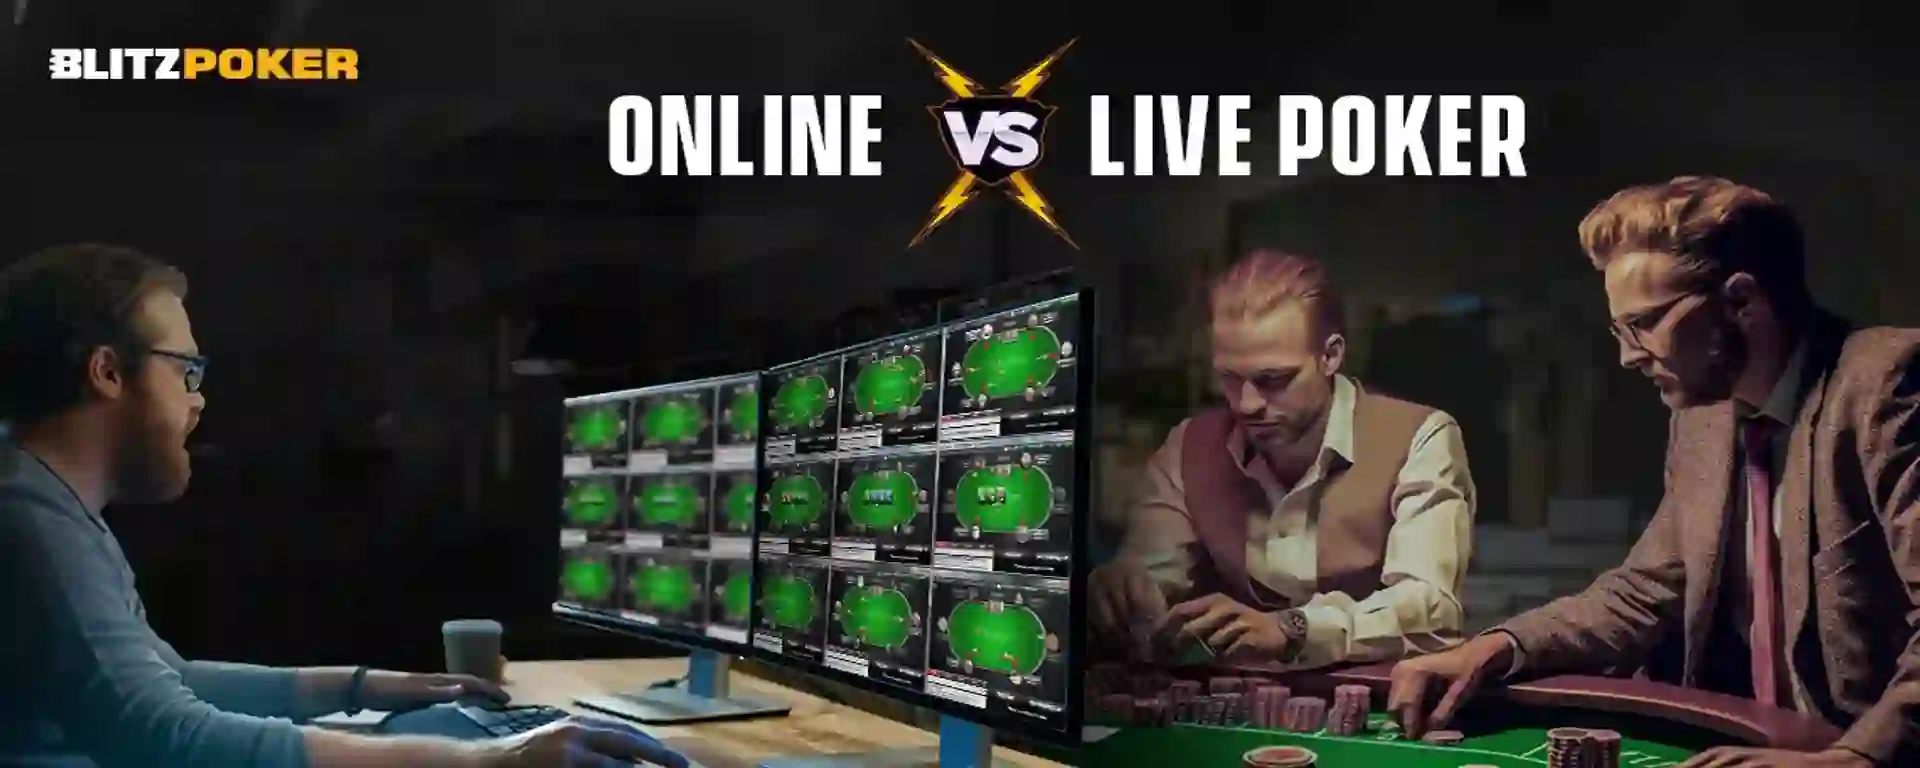 Online Poker vs Live Poker: Which One’s Easier & Better